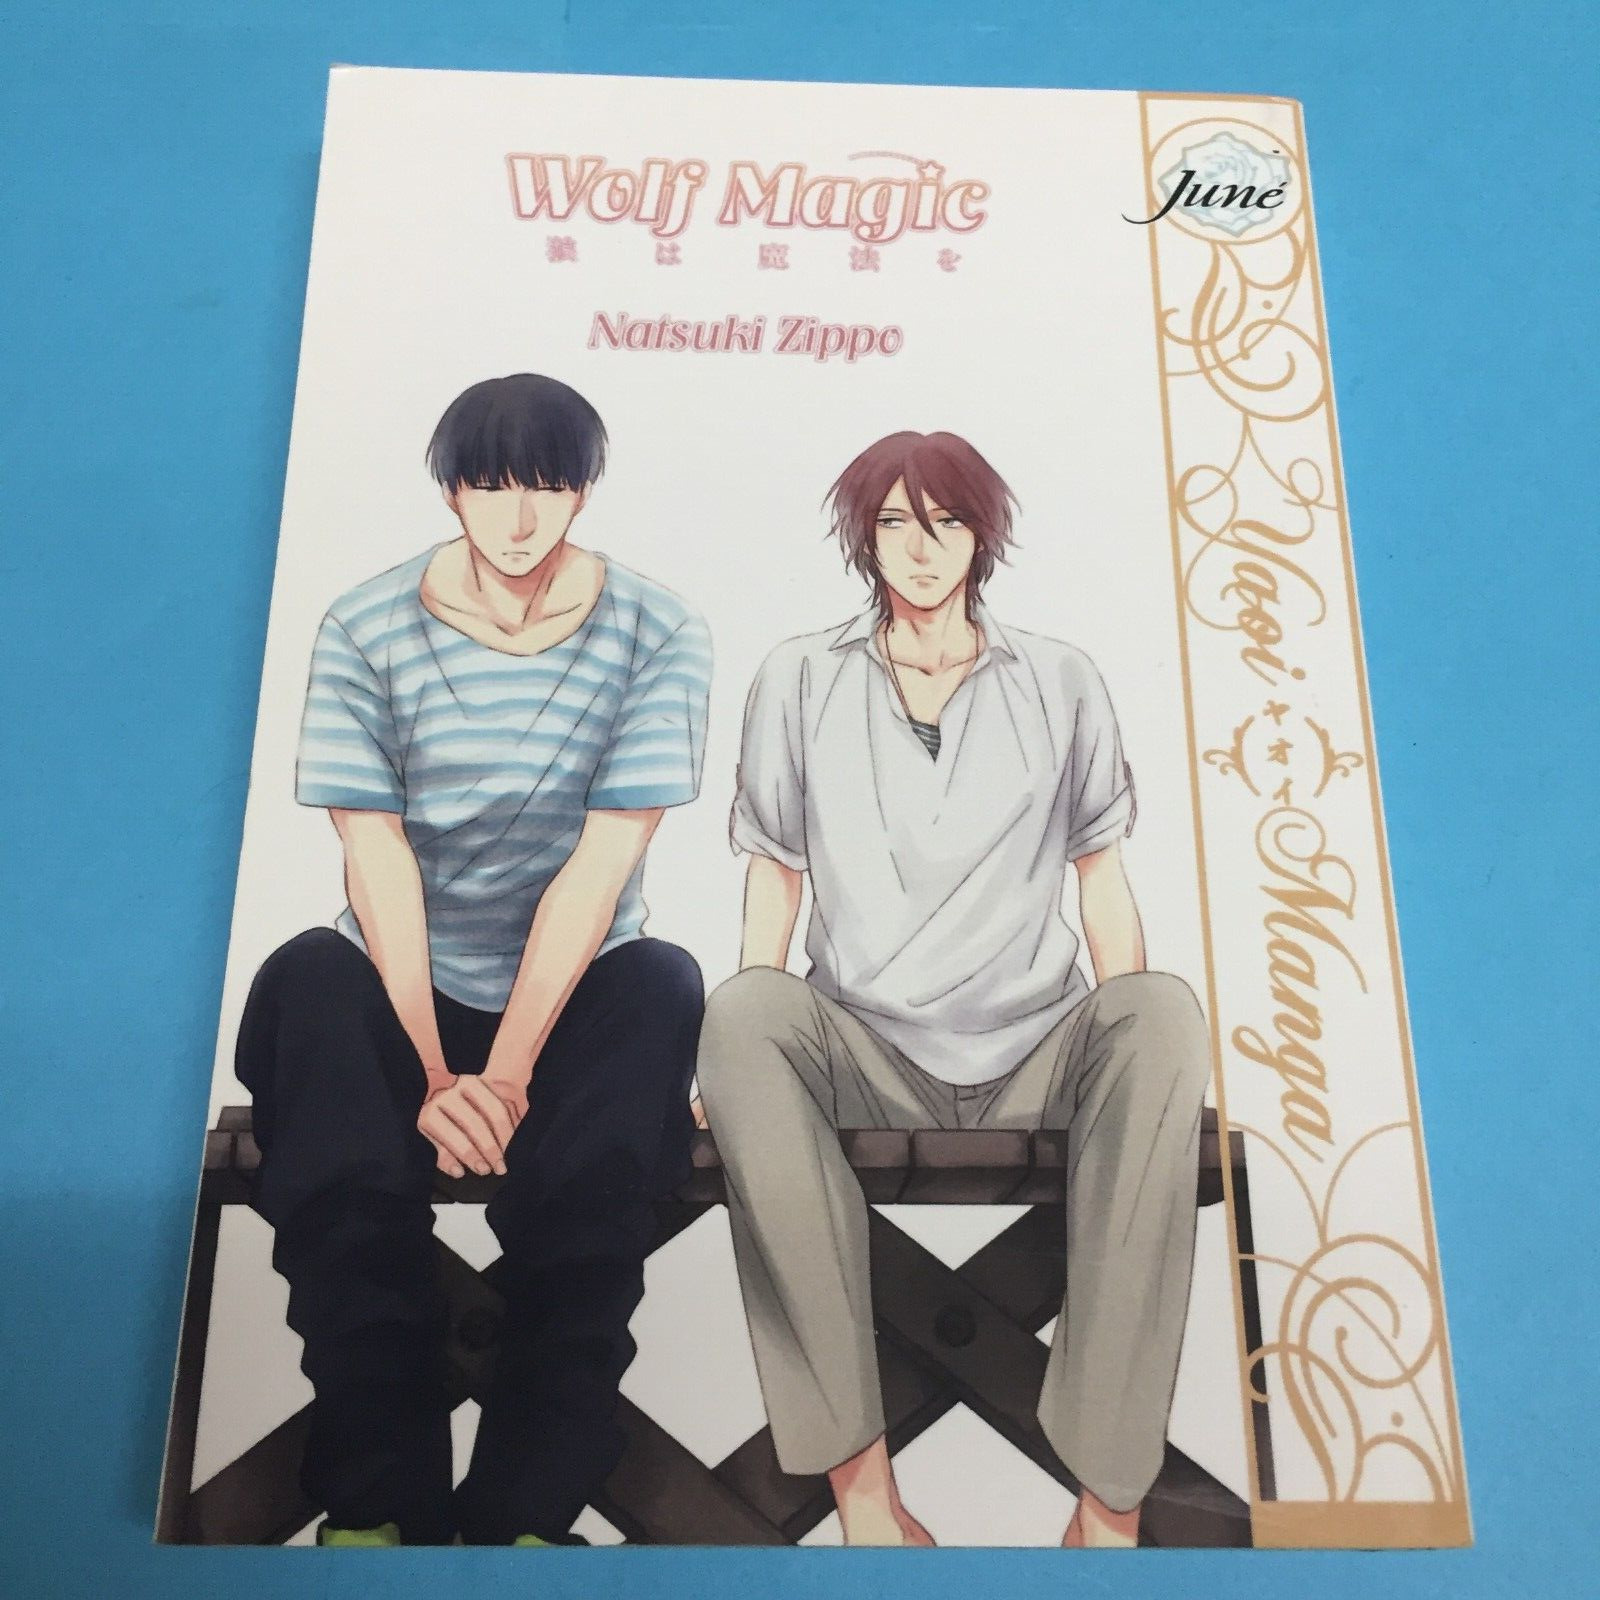 Wolf Magic Manga English Natsuki Zippo June BL Boys Love Yaoi